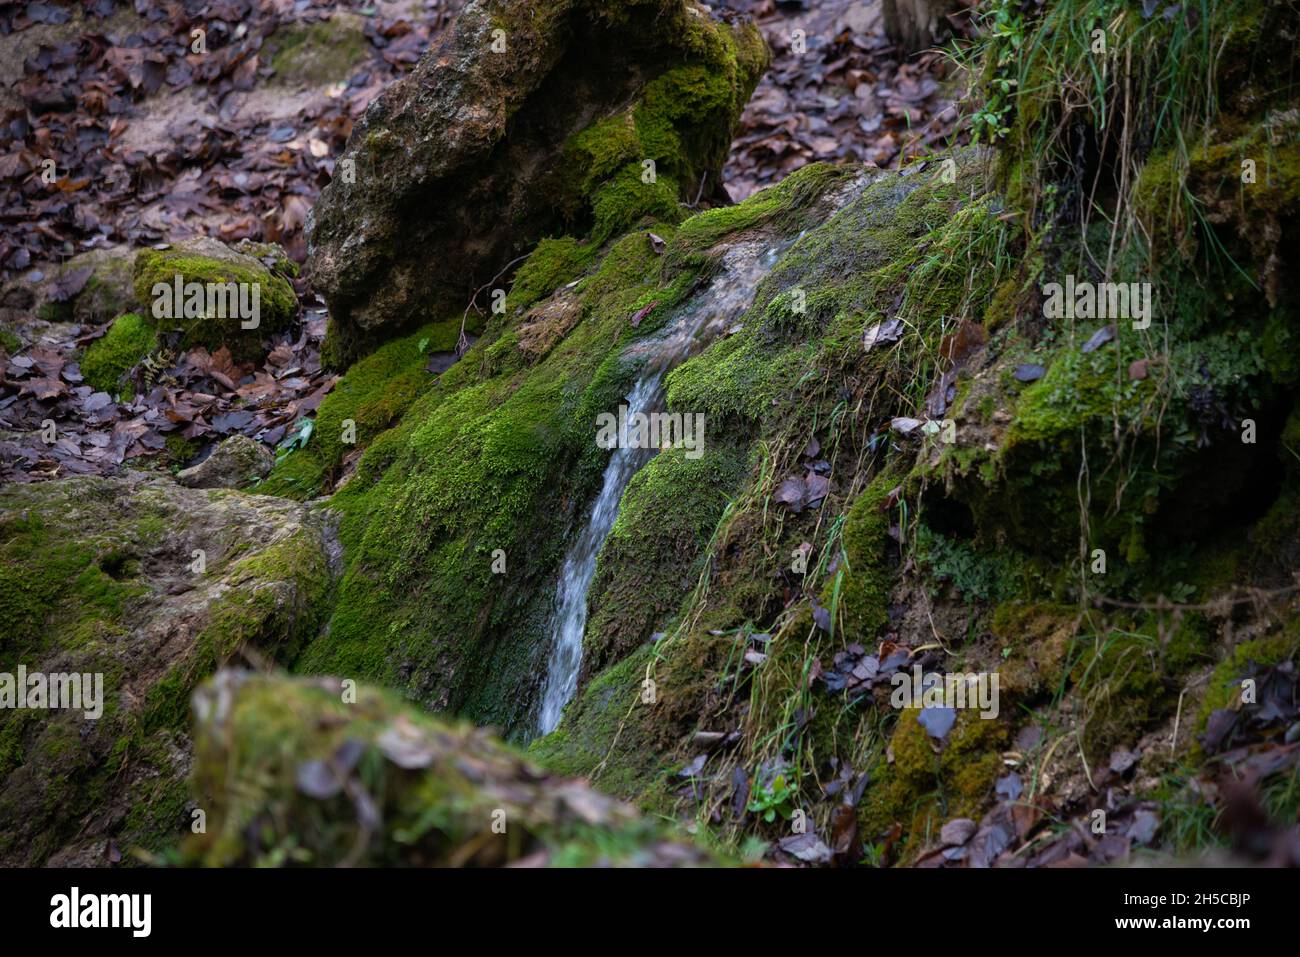 roccia sabbiosa lungo la quale scorre una chiara foresta acqua sorgiva formando una cascata. Pietre con muschio verde. Foto Stock